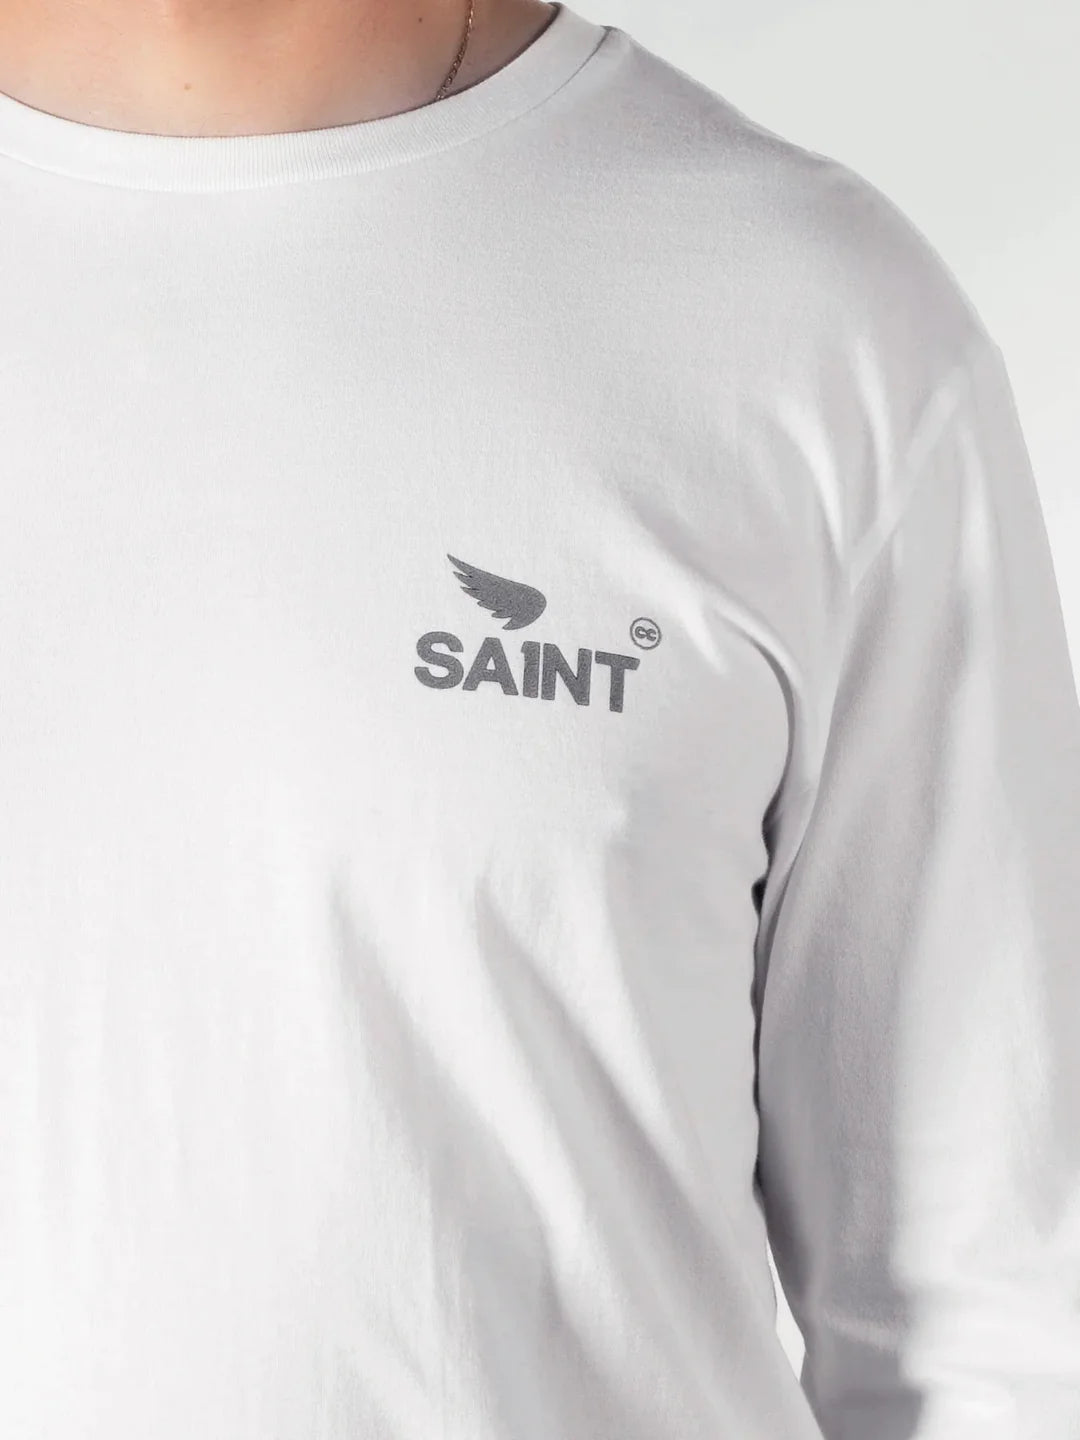 SA1NT Basic Long Sleeve Tee - White - Saint USA